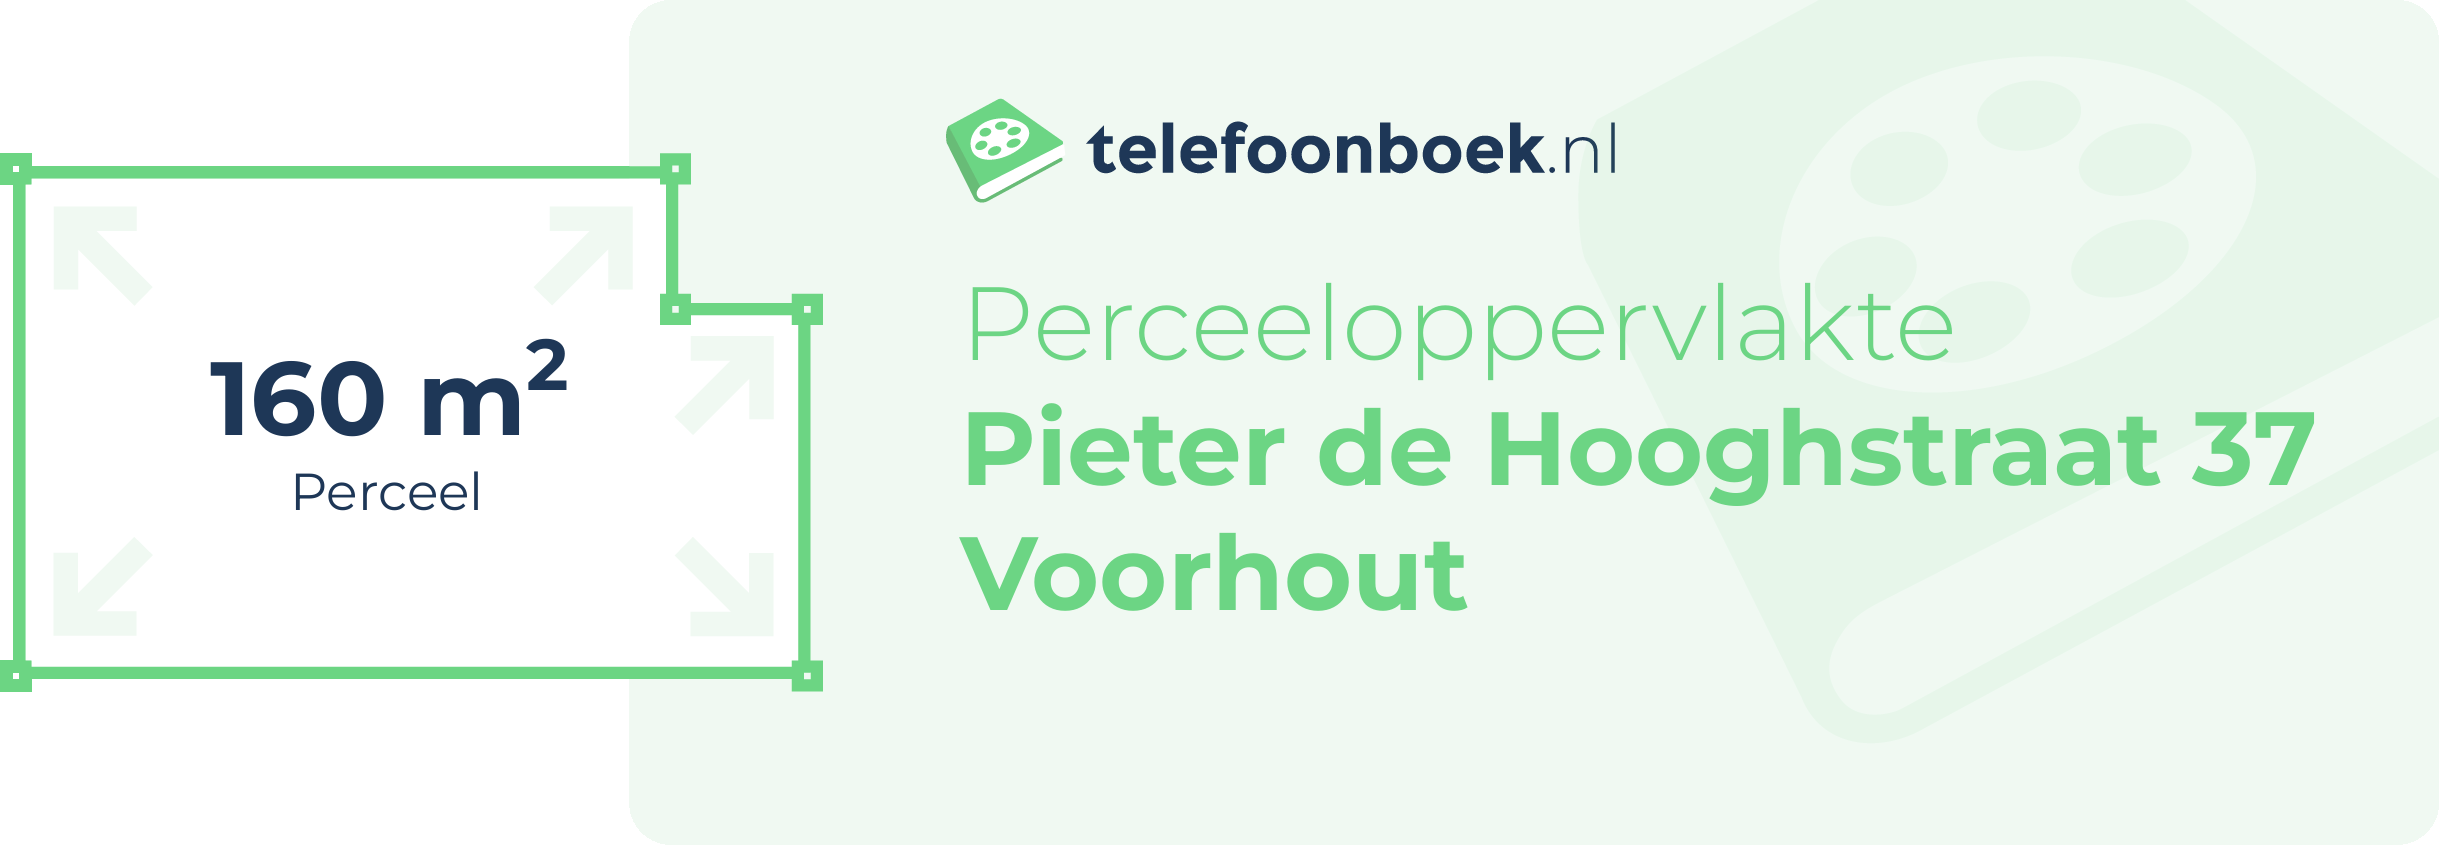 Perceeloppervlakte Pieter De Hooghstraat 37 Voorhout